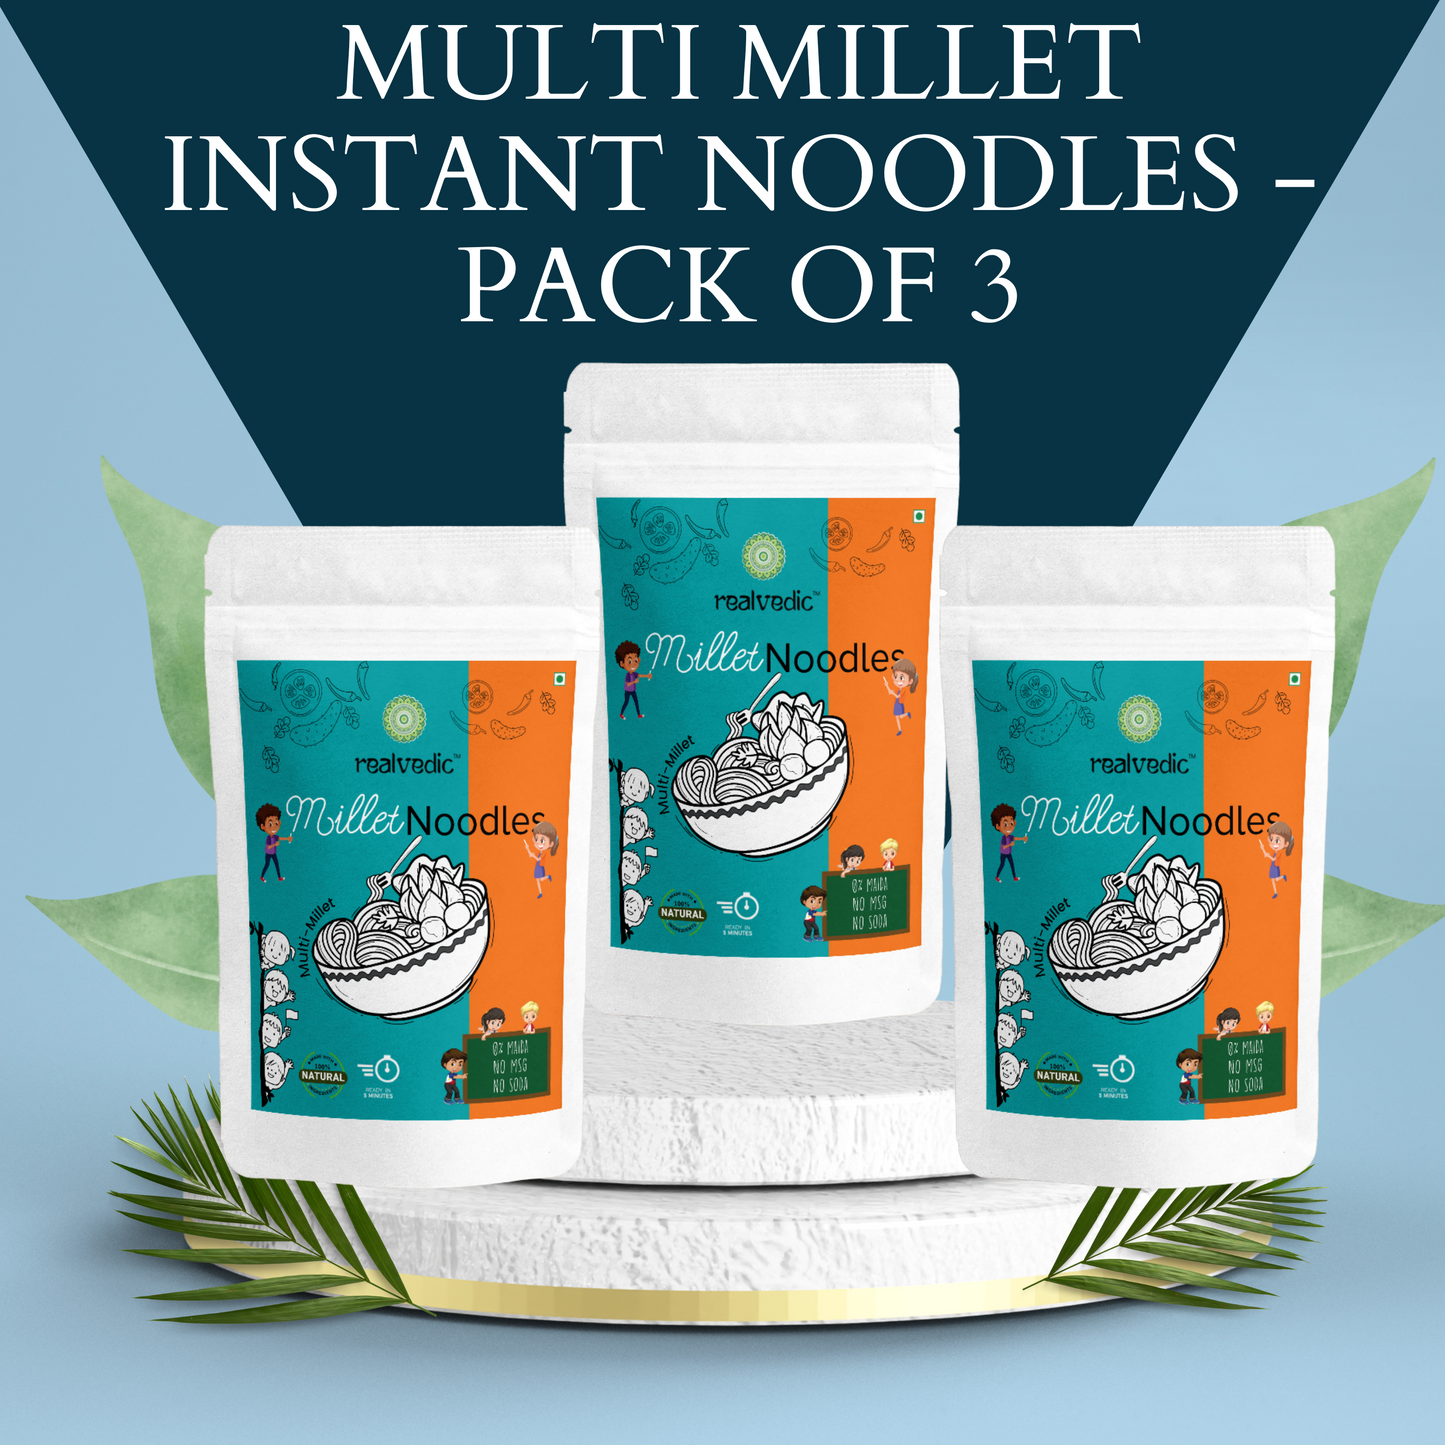 Multi Millet Instant Noodles - Pack of 3